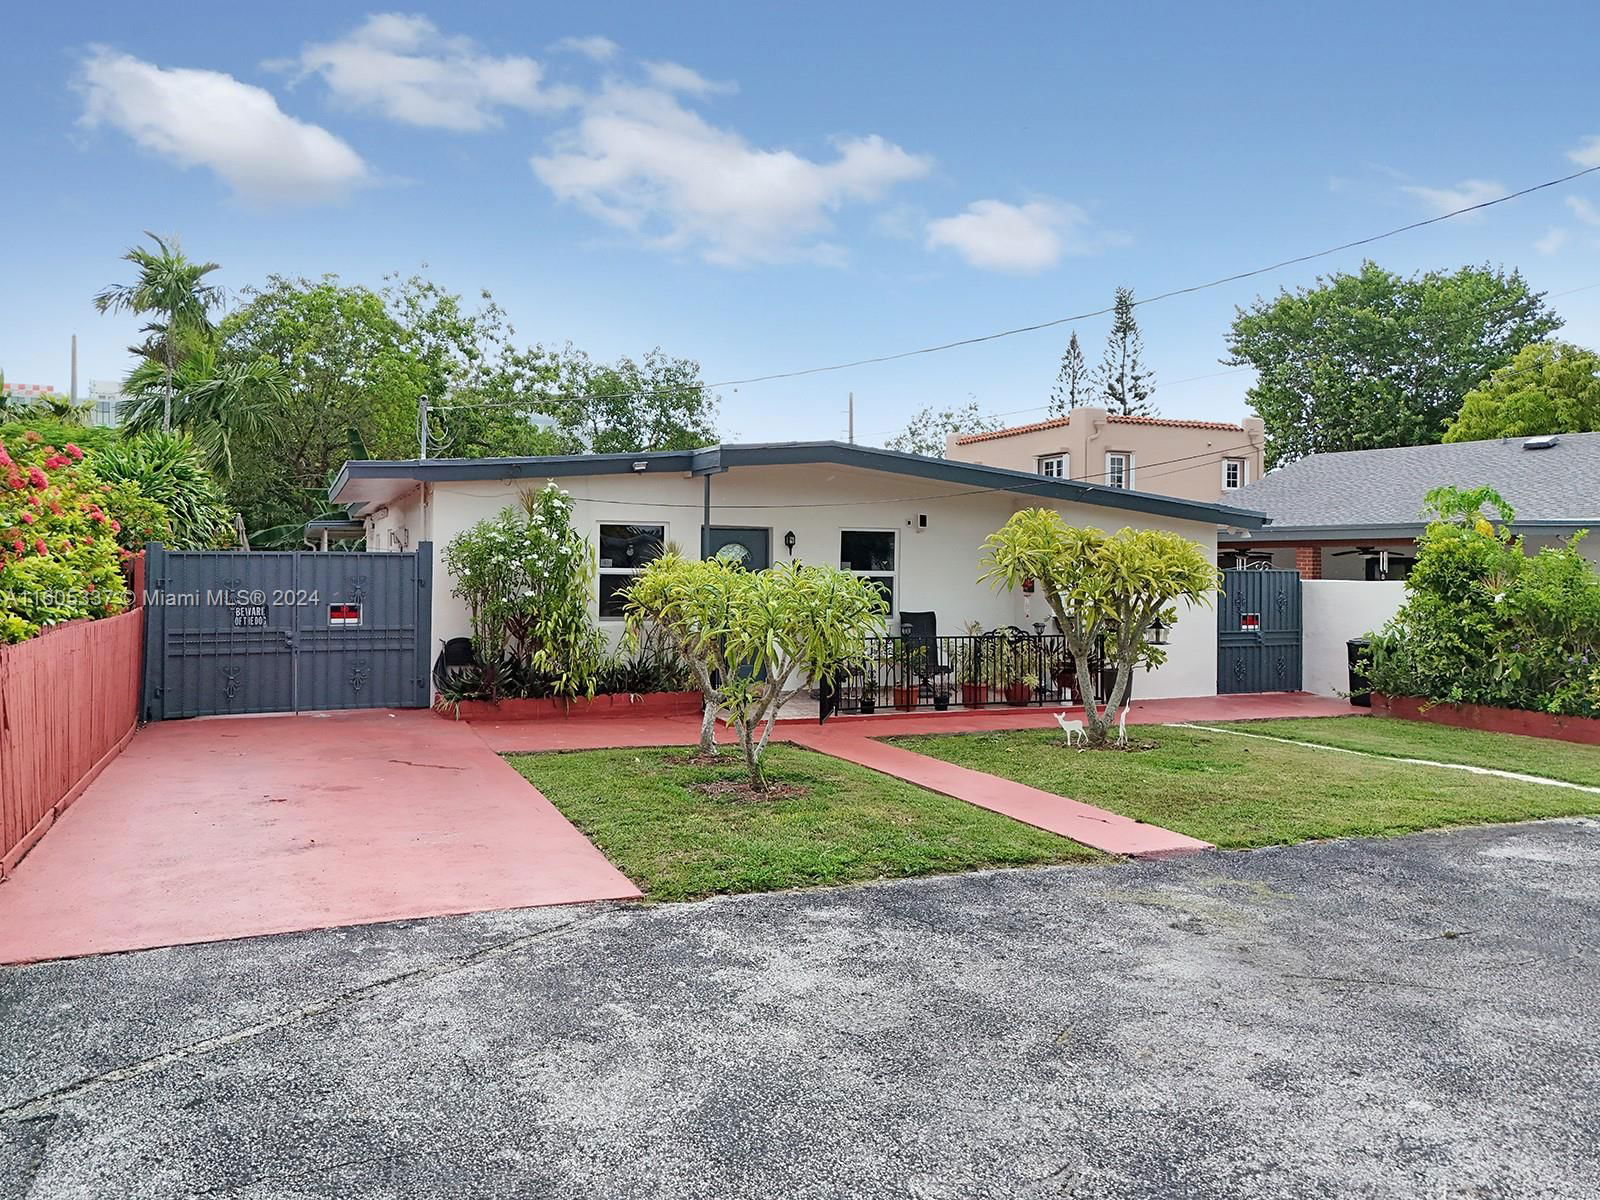 Real estate property located at 3127 63rd Ave, Miami-Dade County, CORAL VILLAS REV, Miami, FL